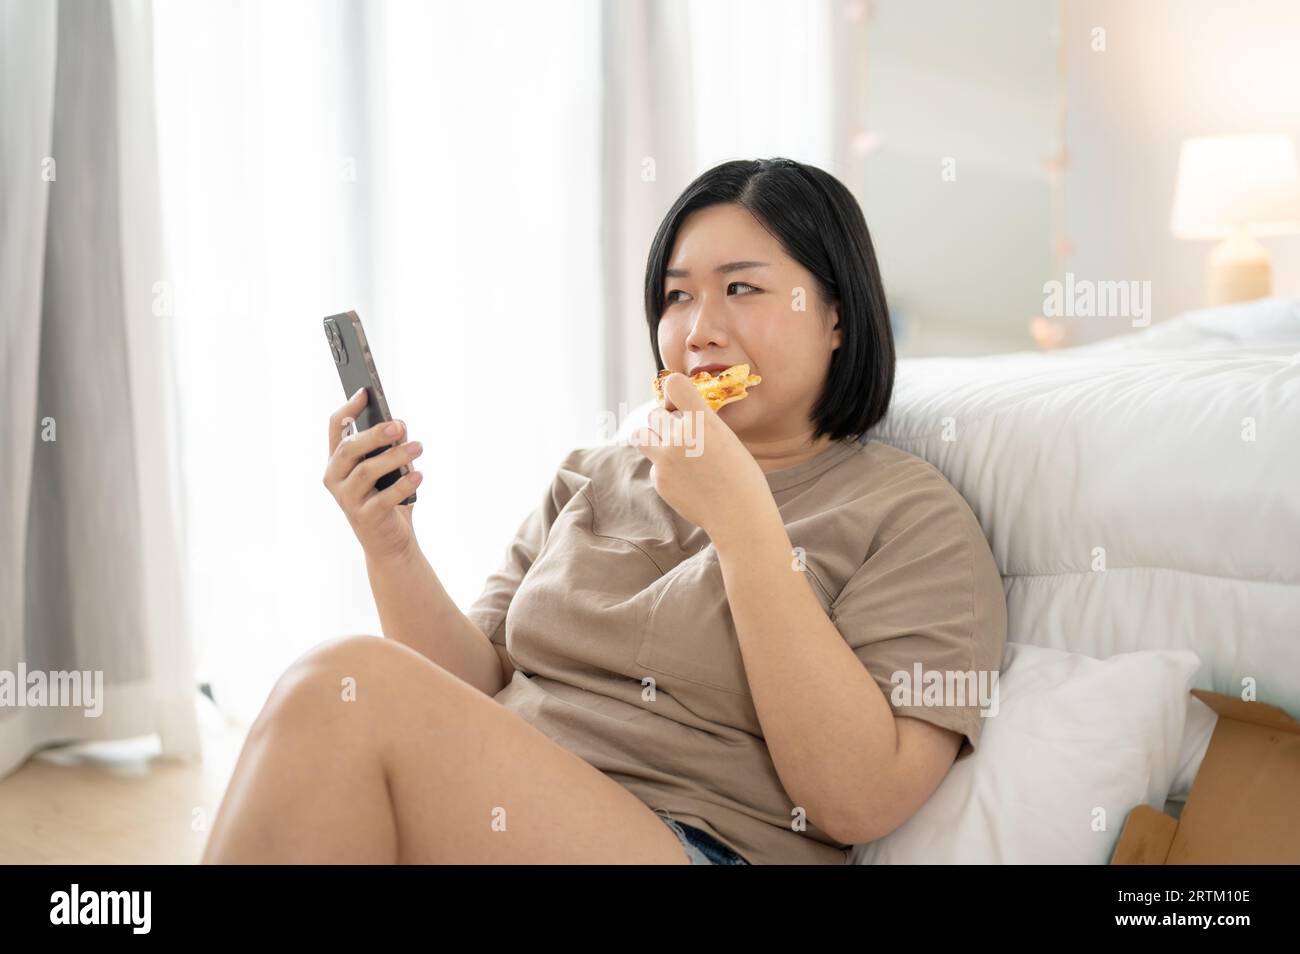 Una donna asiatica curvy Plus-size, felice e gioiosa, in abiti comodi, si sta gustando la pizza mentre scorre i social media sul suo smartphone nel suo bedroo Foto Stock